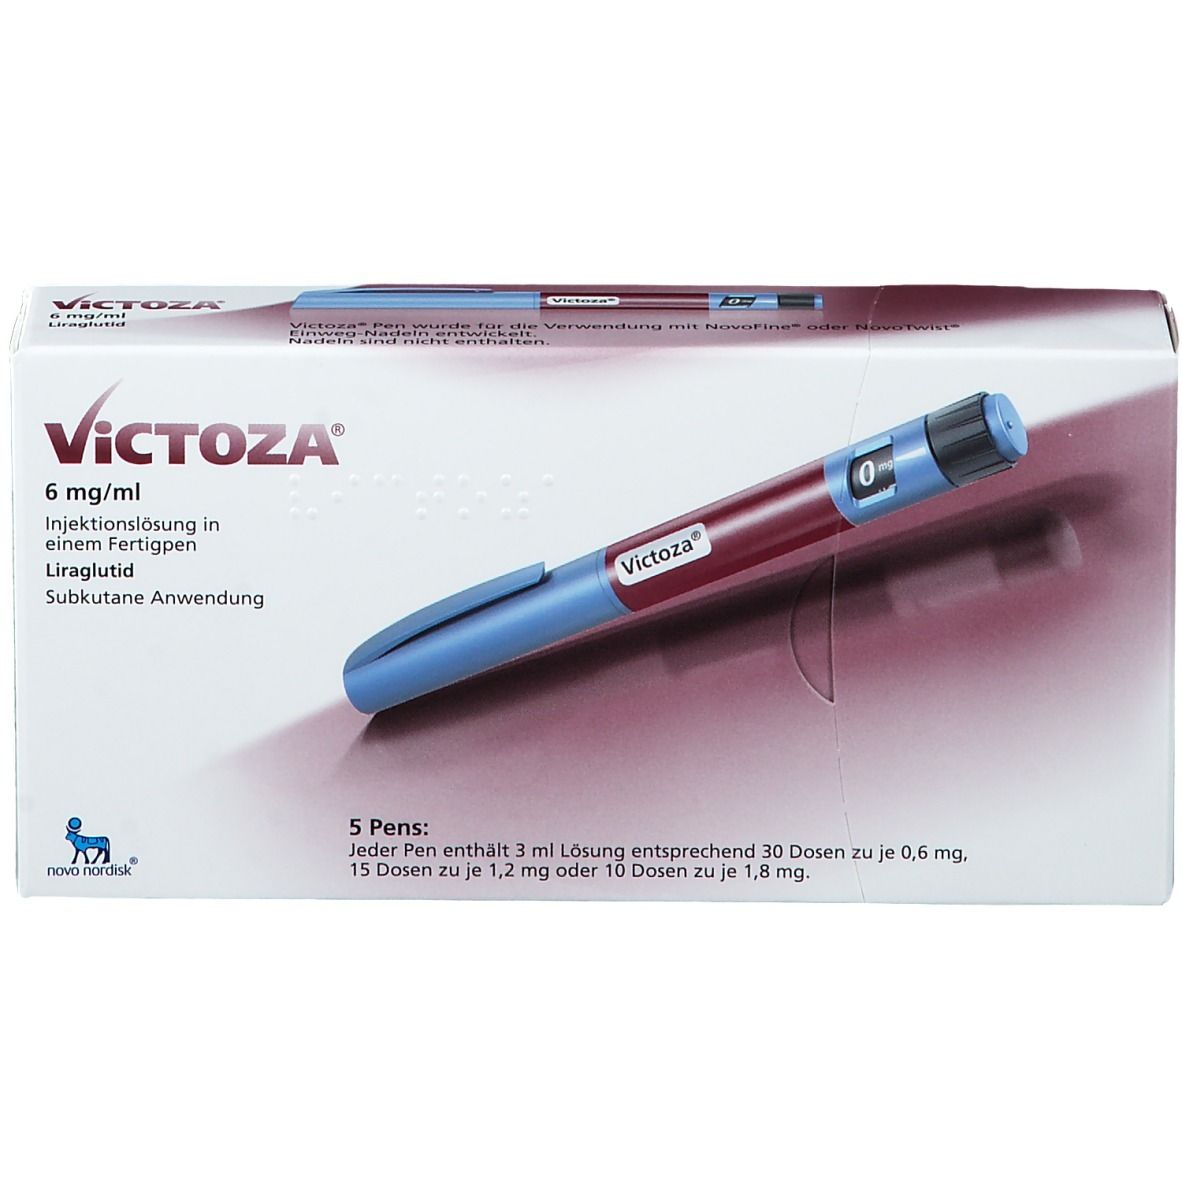 Victoza® 6 mg/ml